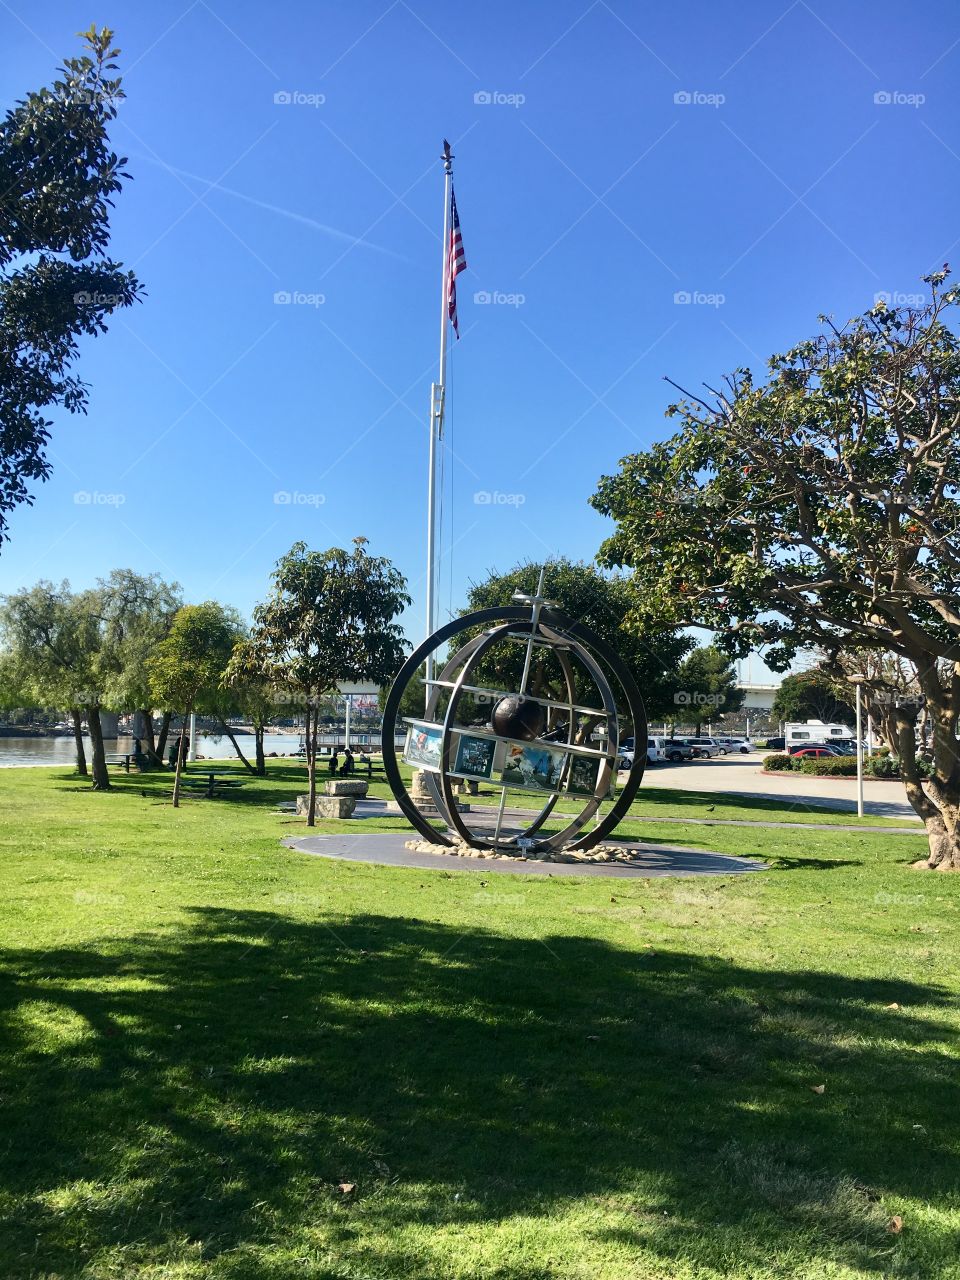 A park in Long Beach